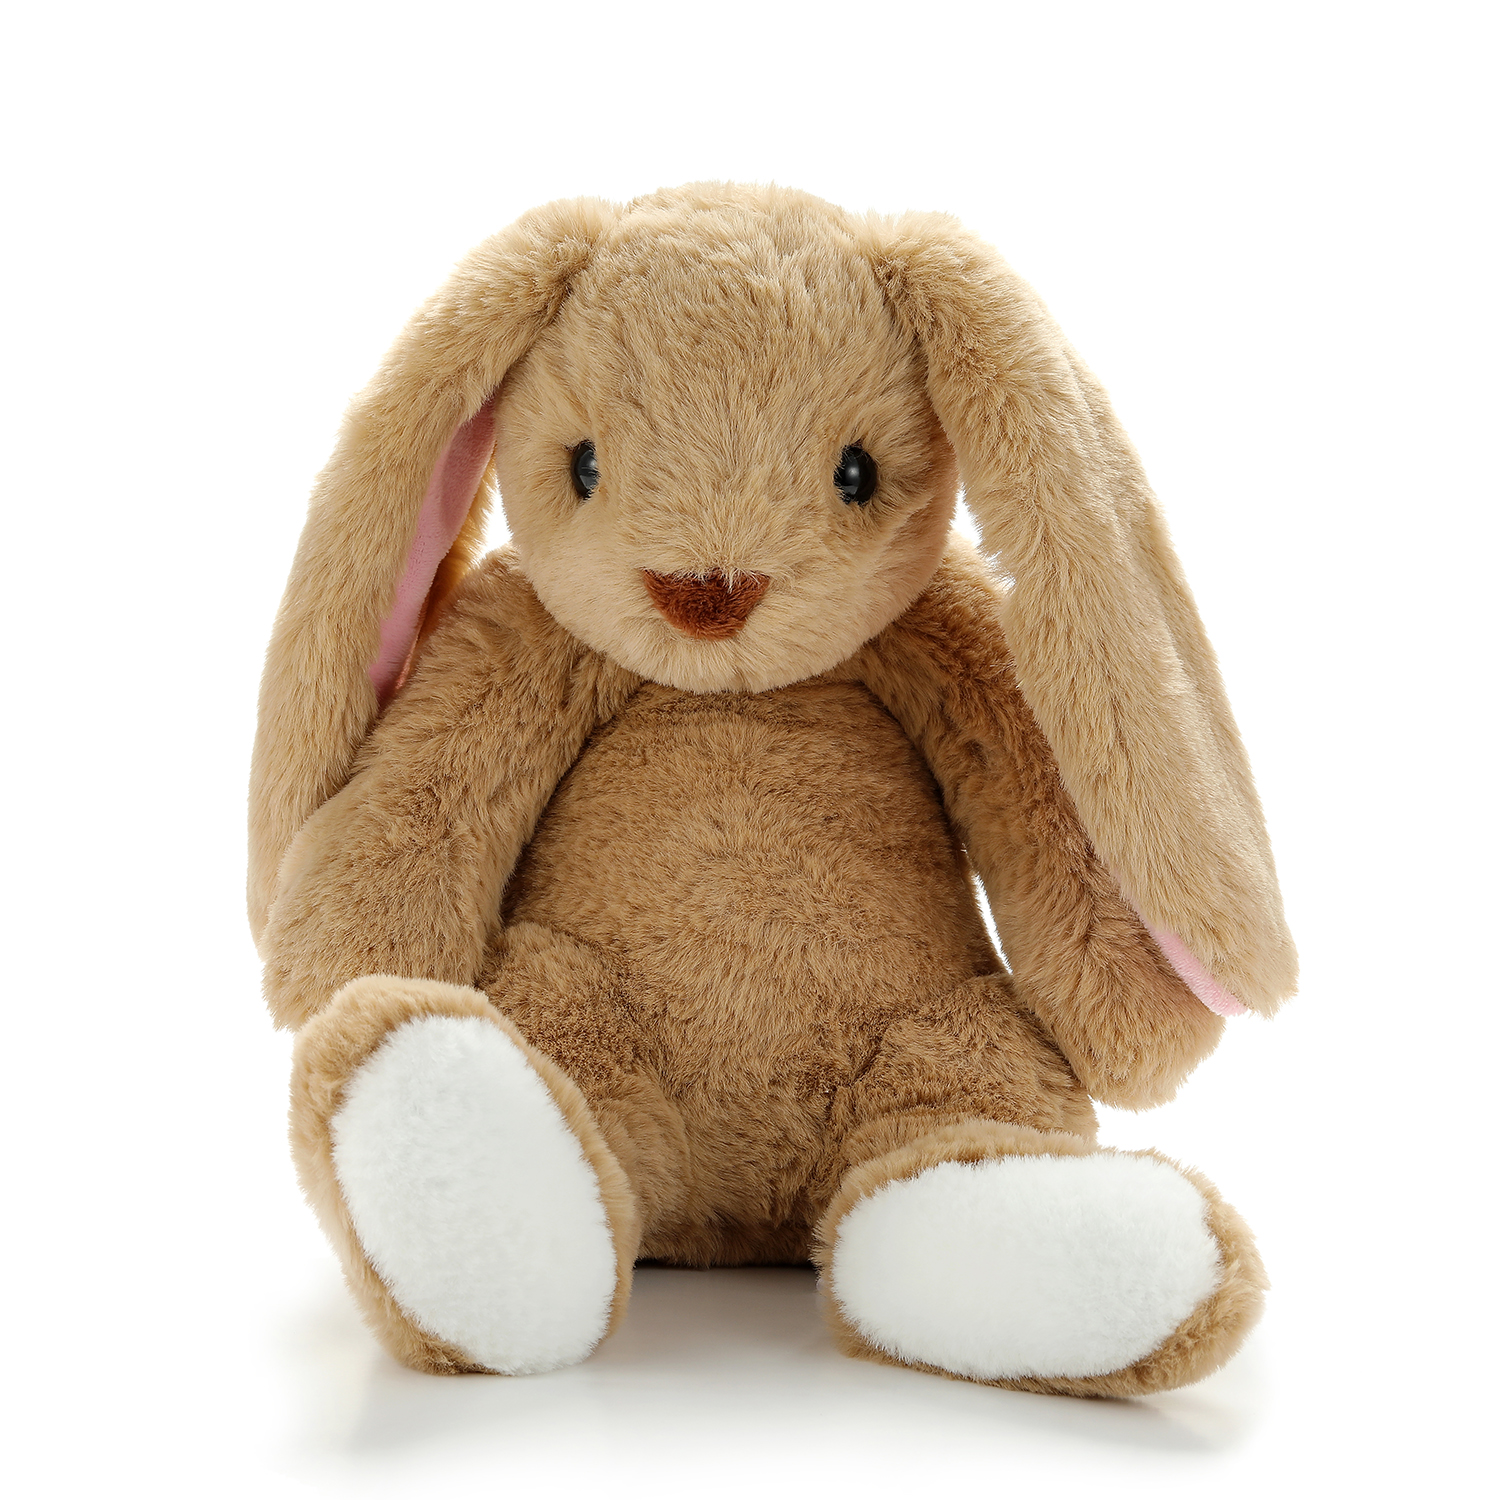 Los mejores juguetes de regalo, juguetes de peluche para la hora de dormir, juguetes de conejo lindos y suaves, juguetes de conejito rellenos